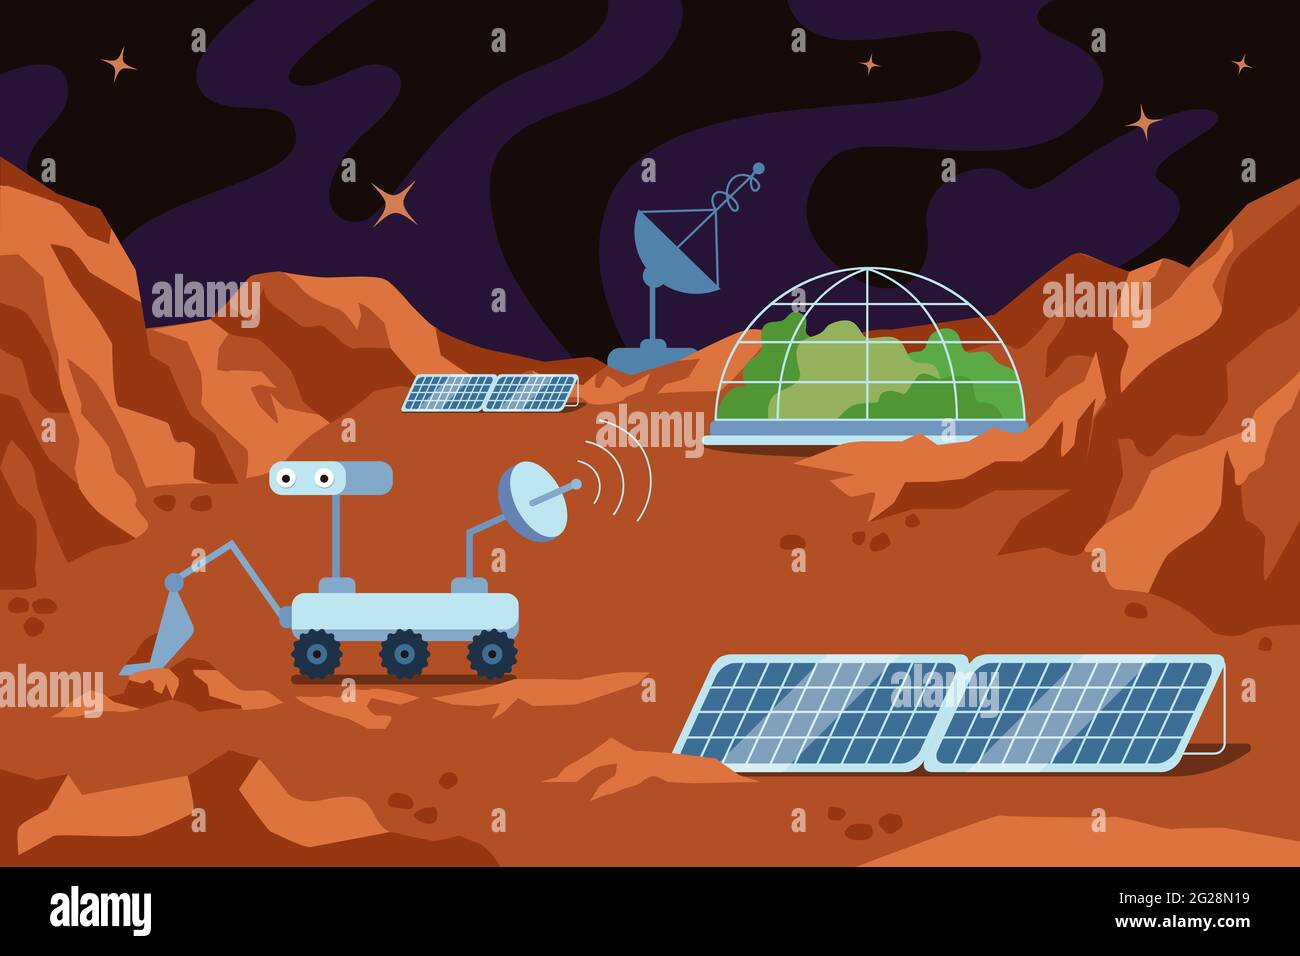 Kolonisierung des roten Planeten menschliche Raumbasis. Wissenschaftsstation auf der Mars-Landschaft mit Kuppelbau, Bergen und Sternen am Himmel. Station in der Galaxie im Universum. Kolonisatoren erkunden Exoplaneten-Bodenerkundung Stock Vektor